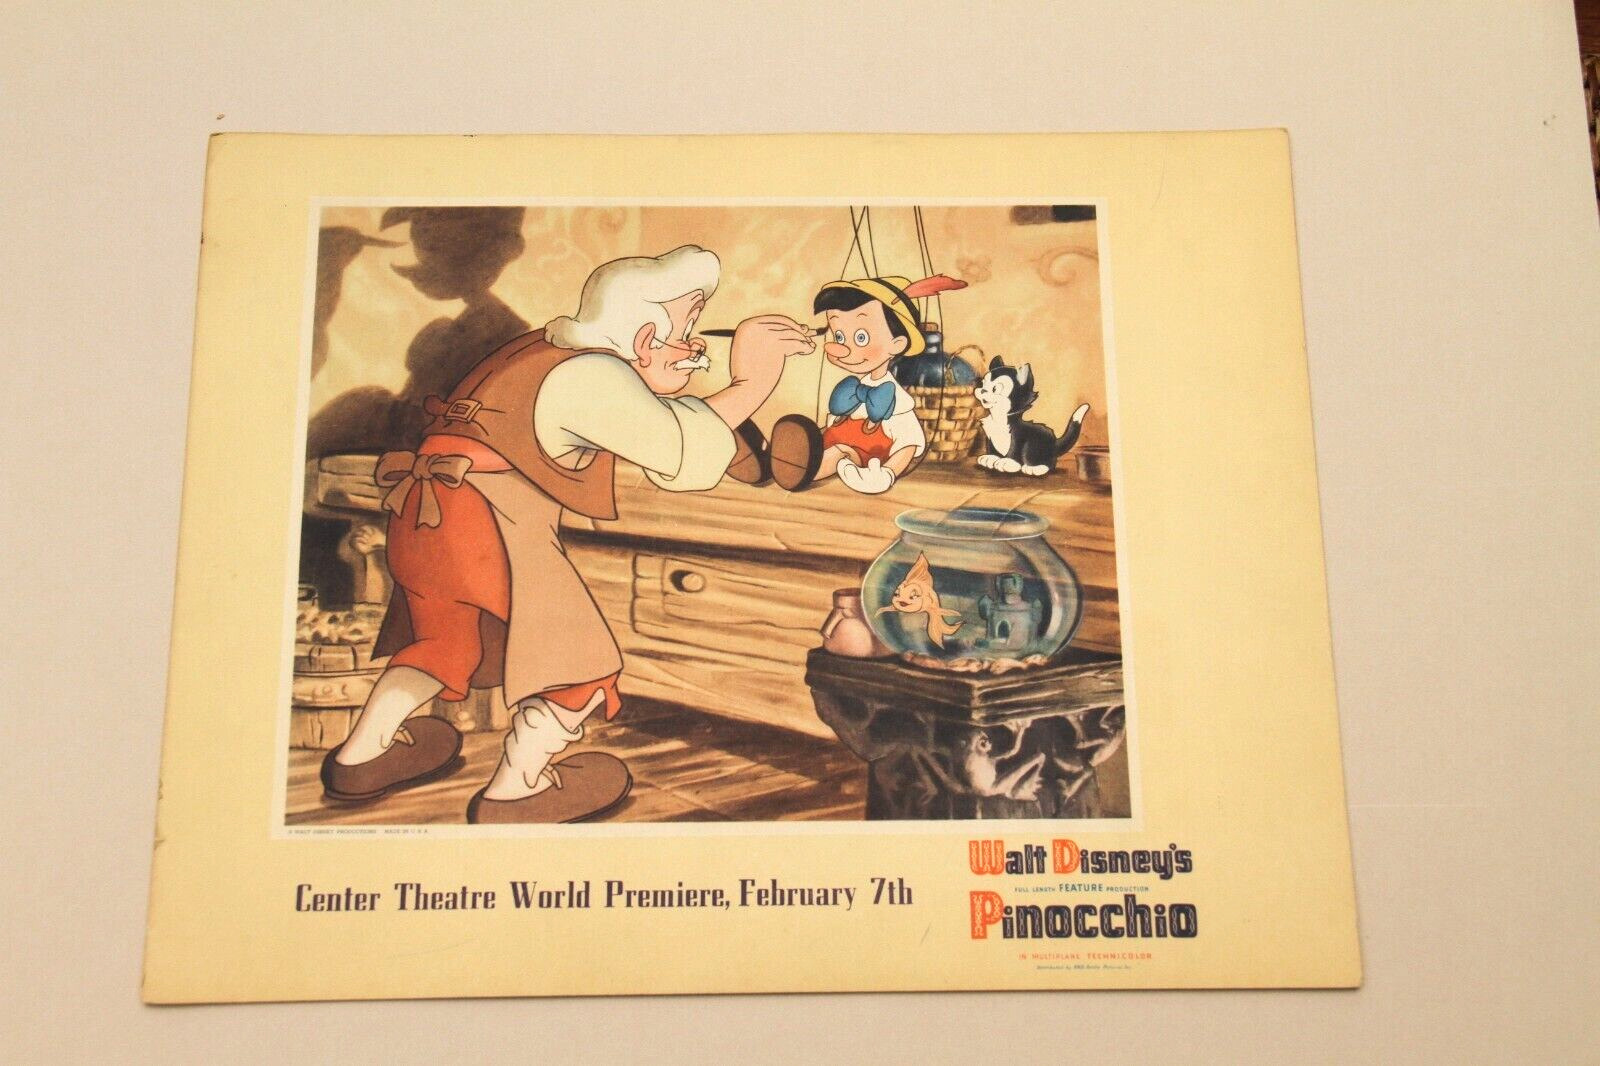 Pinocchio Disney Original Vintage Lobby Card Rainbow Room Menu Movie Poster 1940